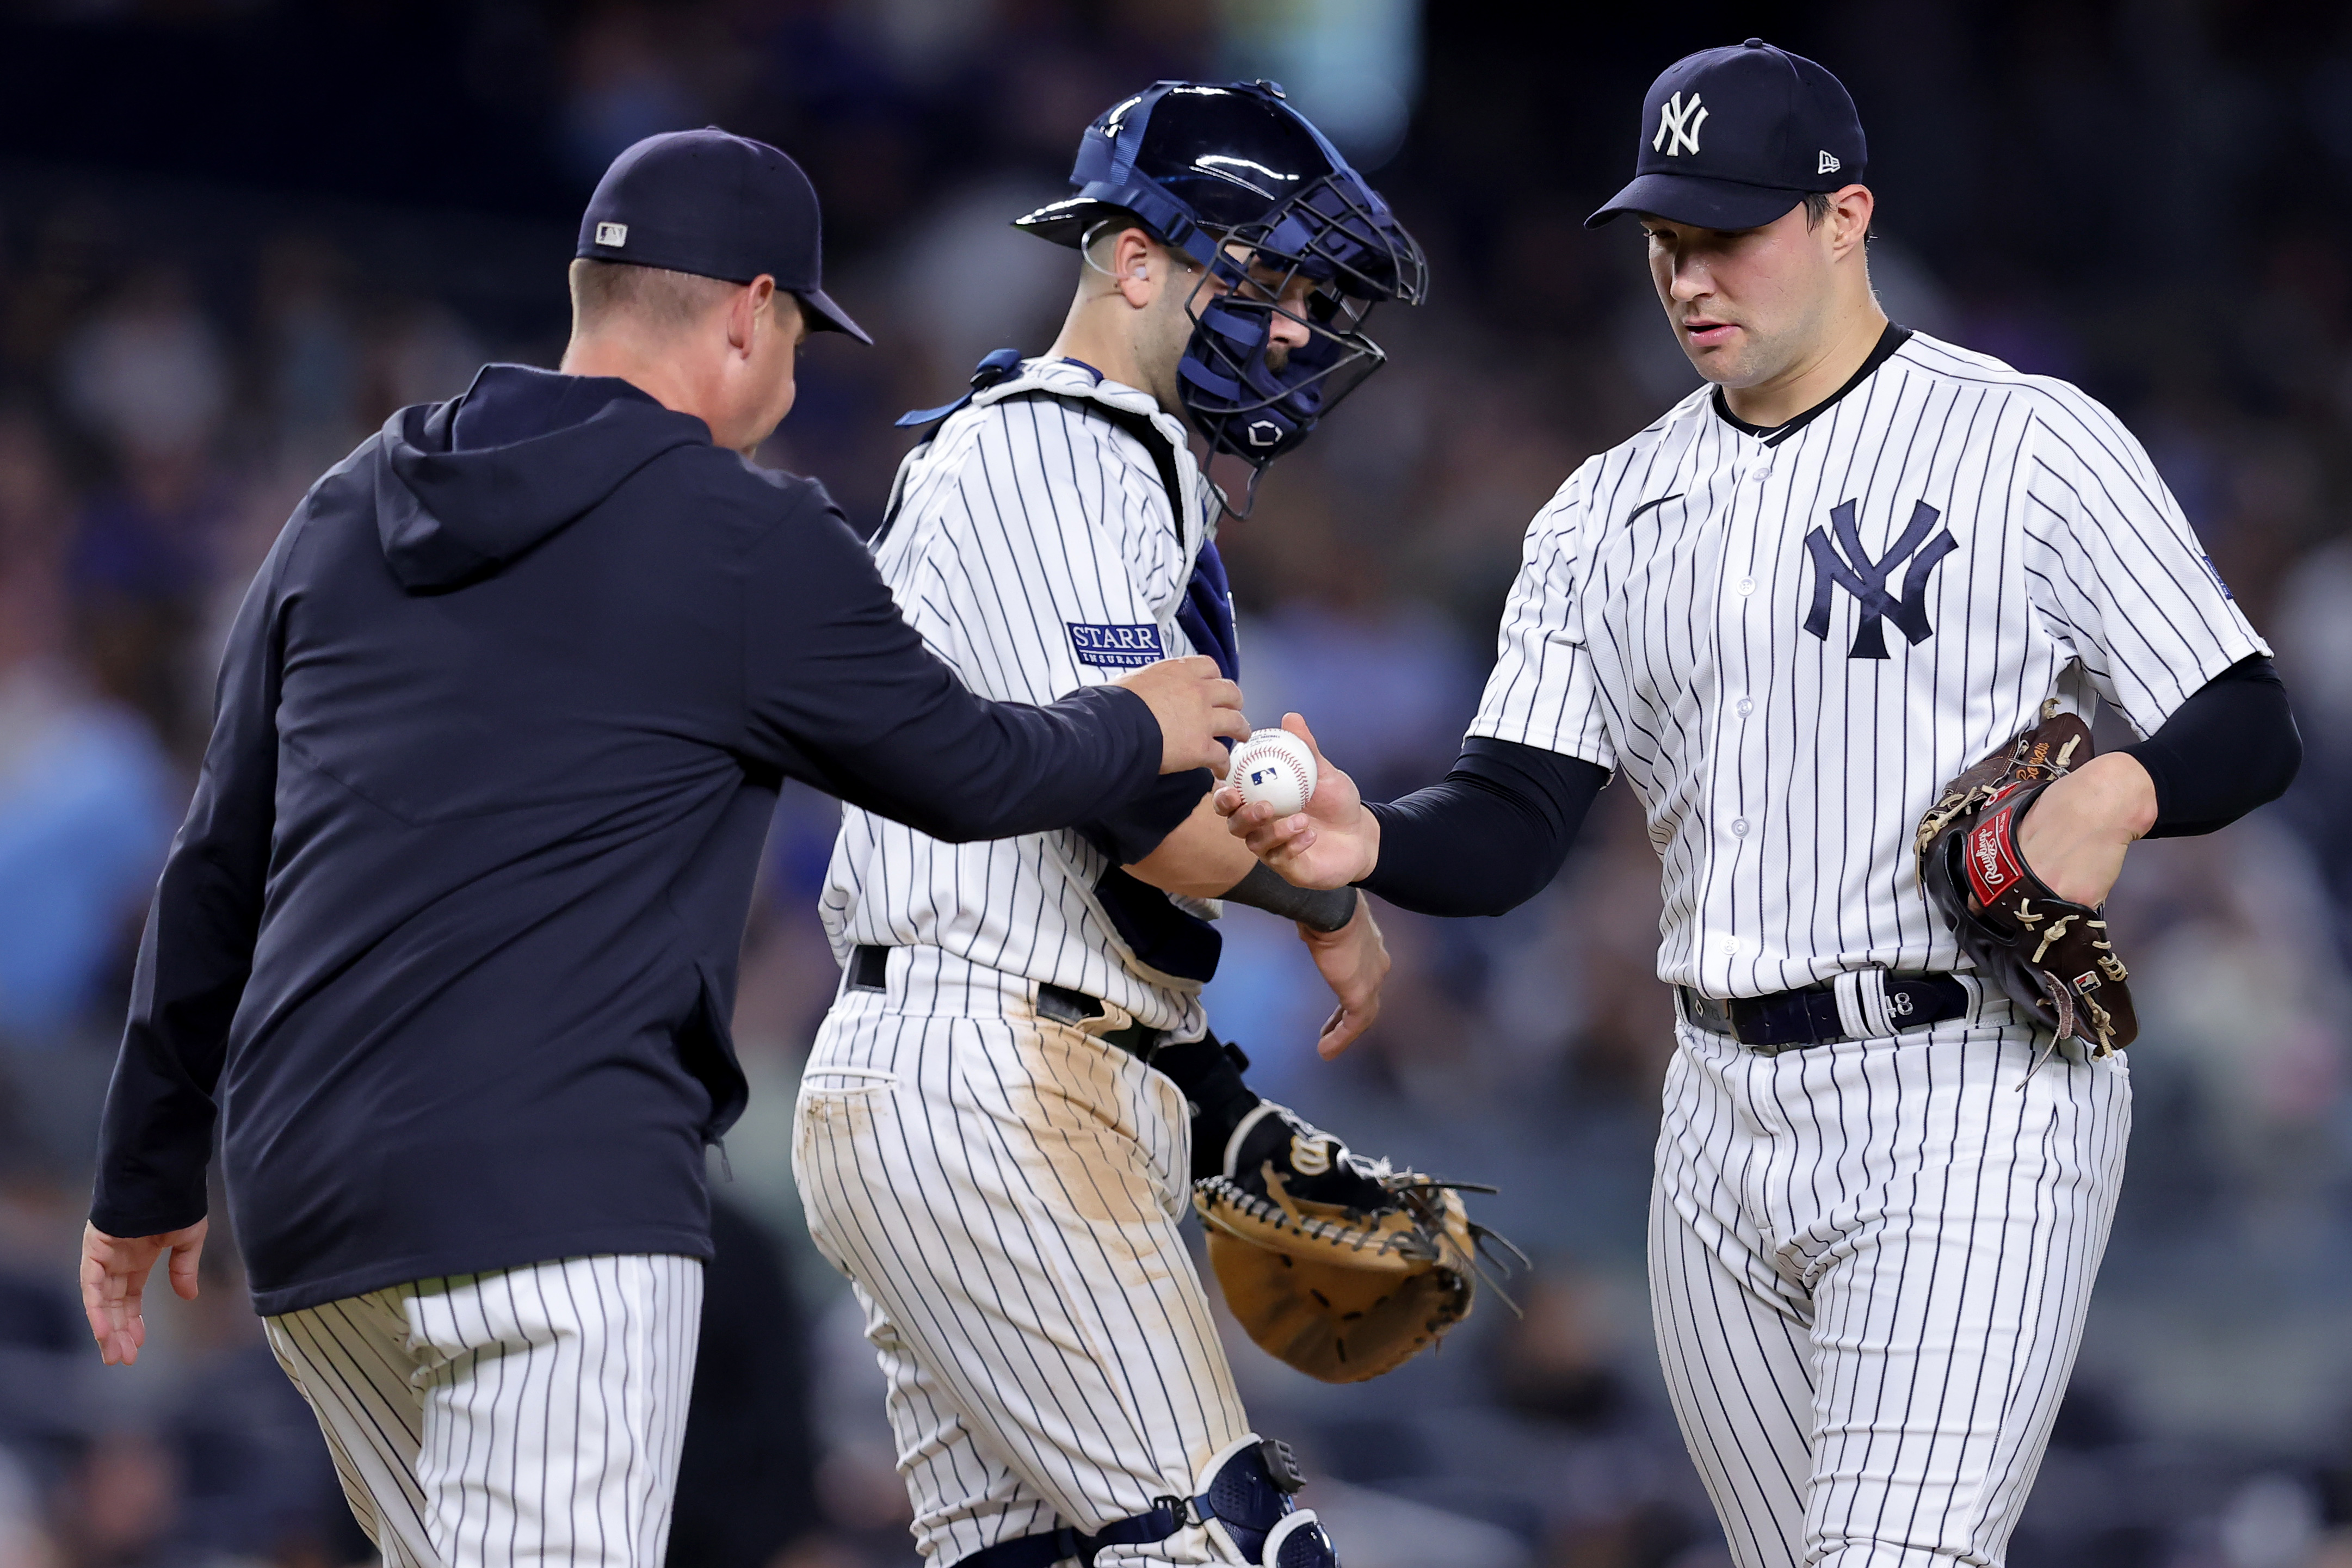 Yankees nearing return of key bullpen reinforcement